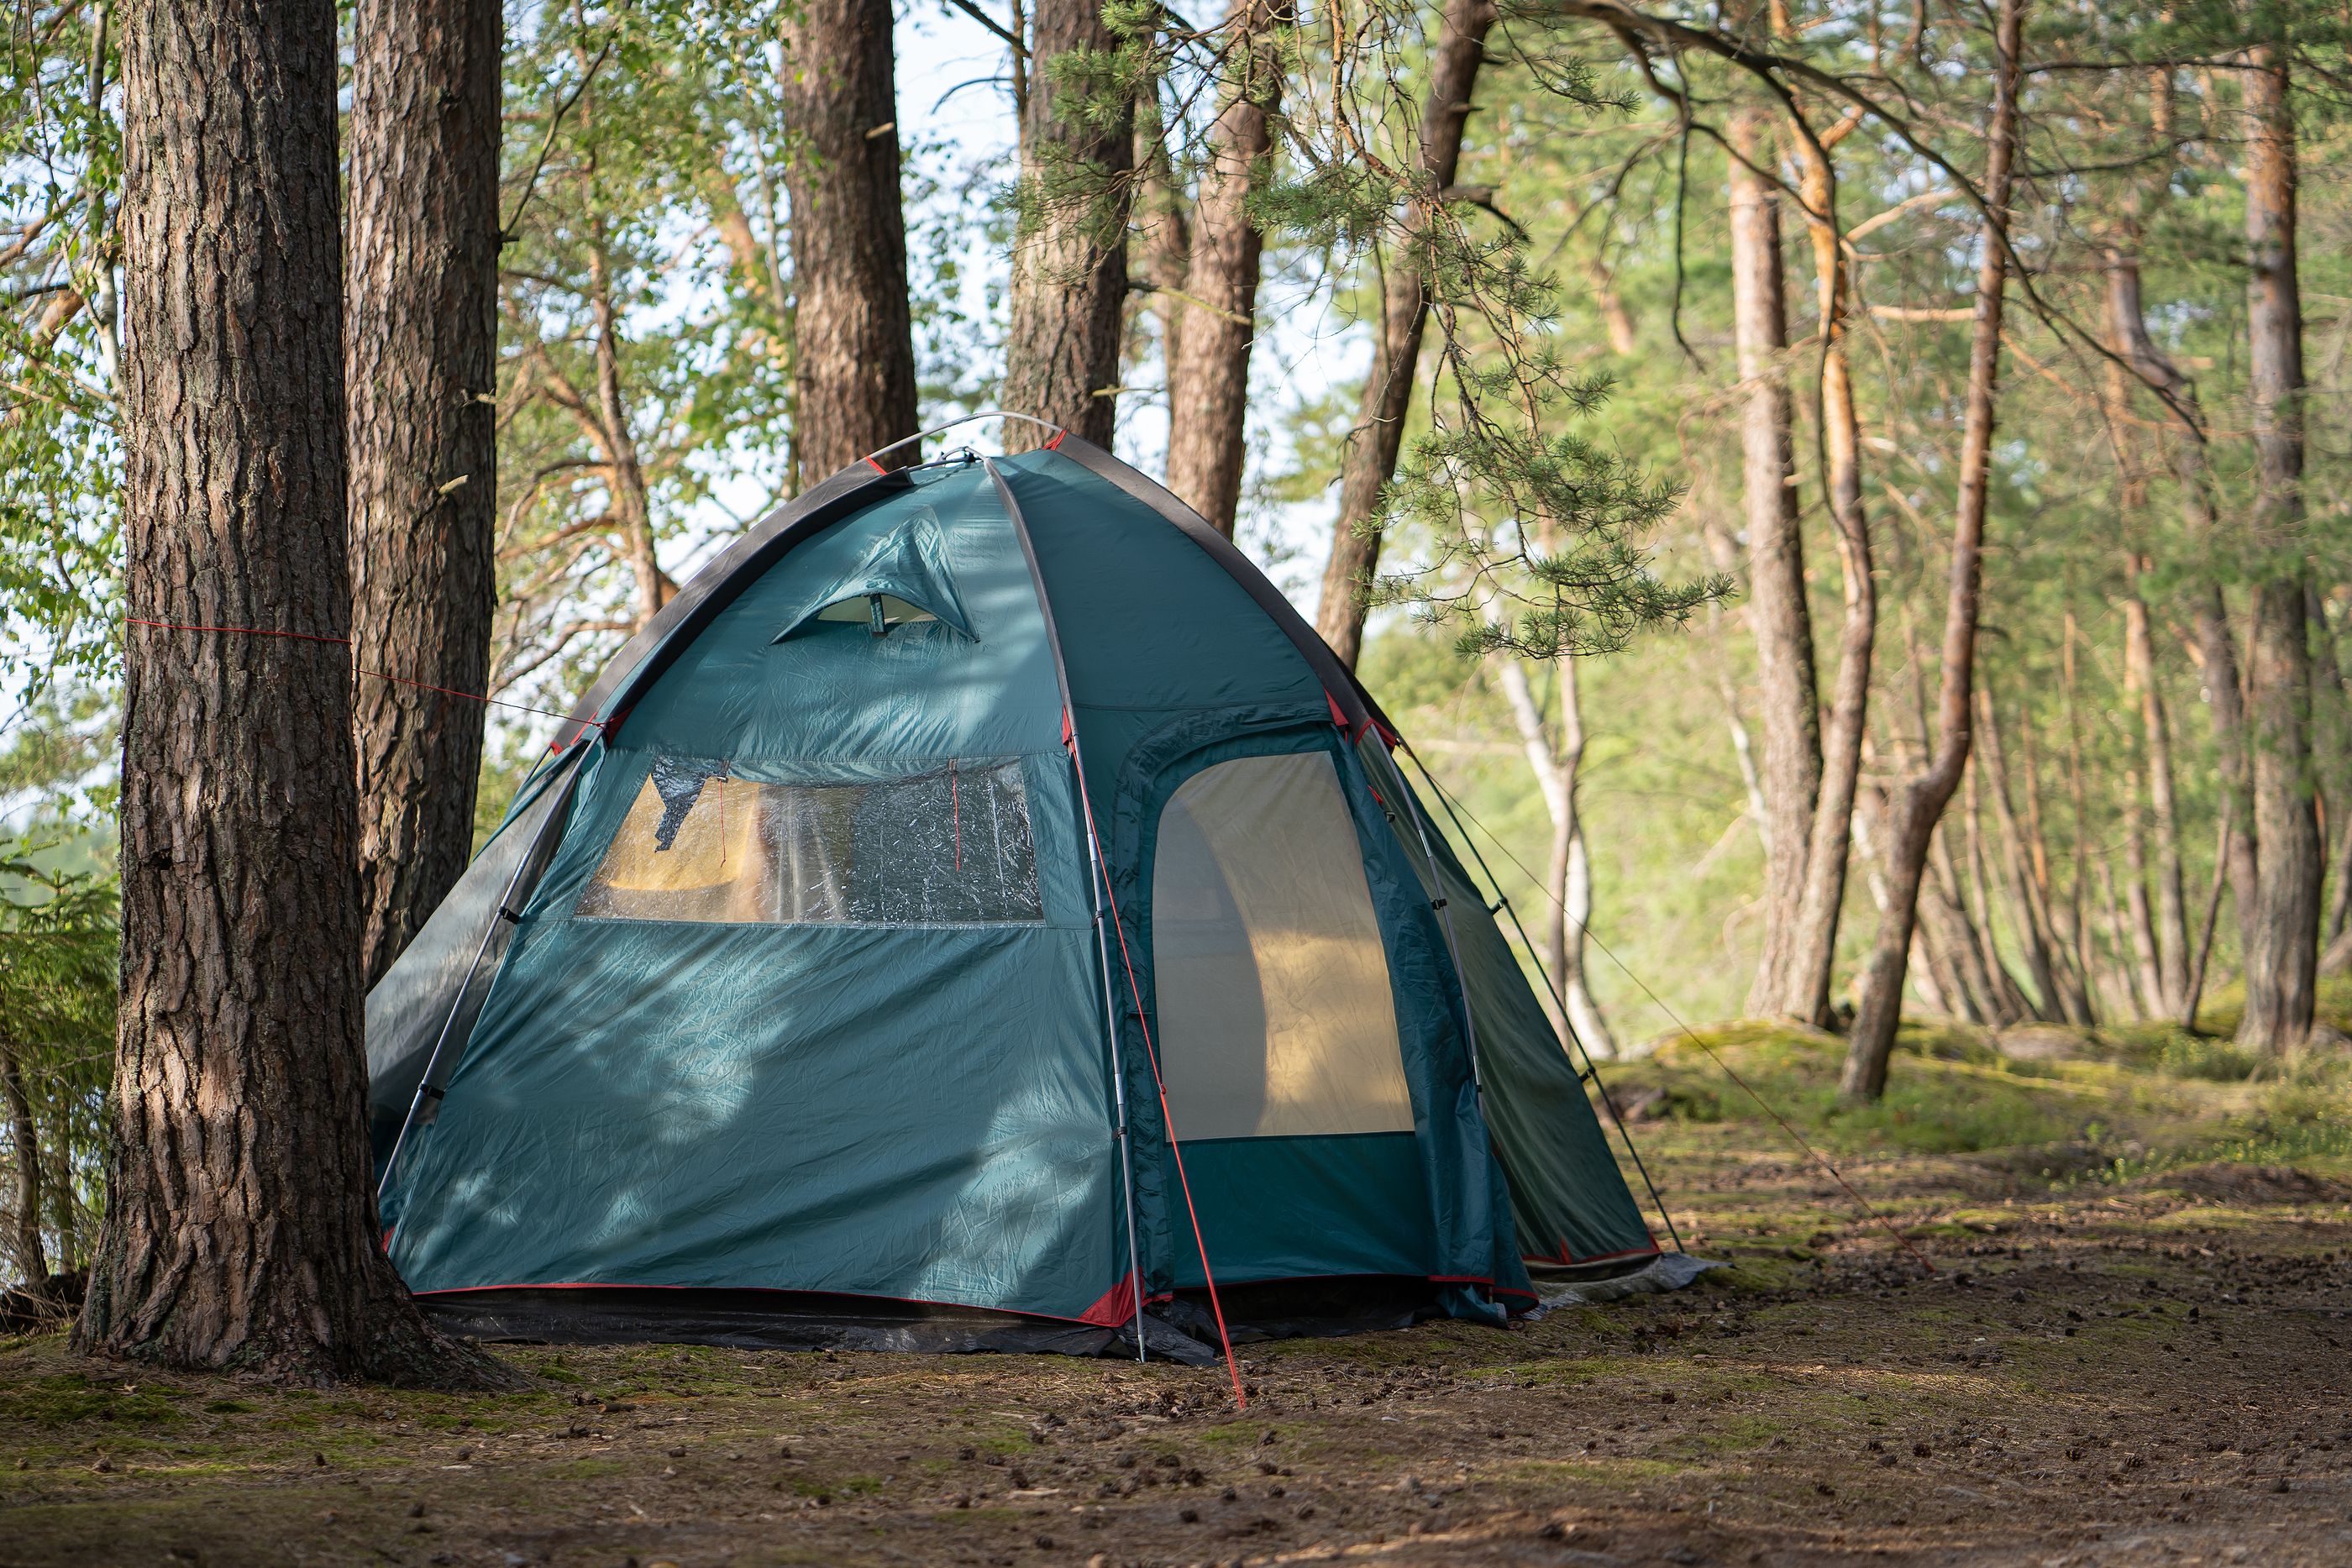 Camping barato y con todo lo necesario, gracias a estos productos de Lidl